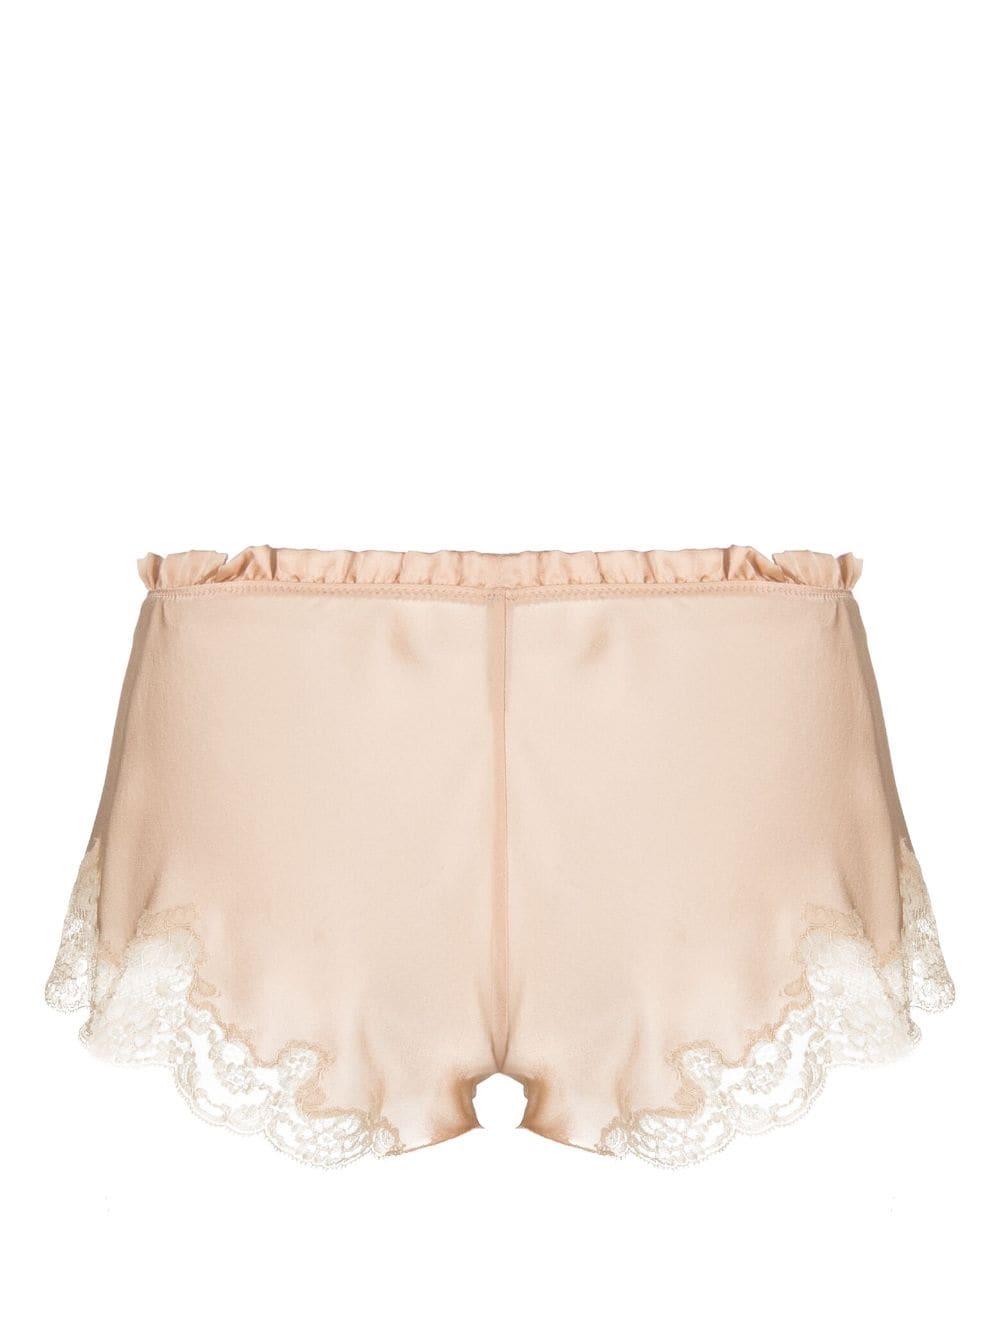 Carine Gilson Calais Caudry-lace silk shorts - Neutrals